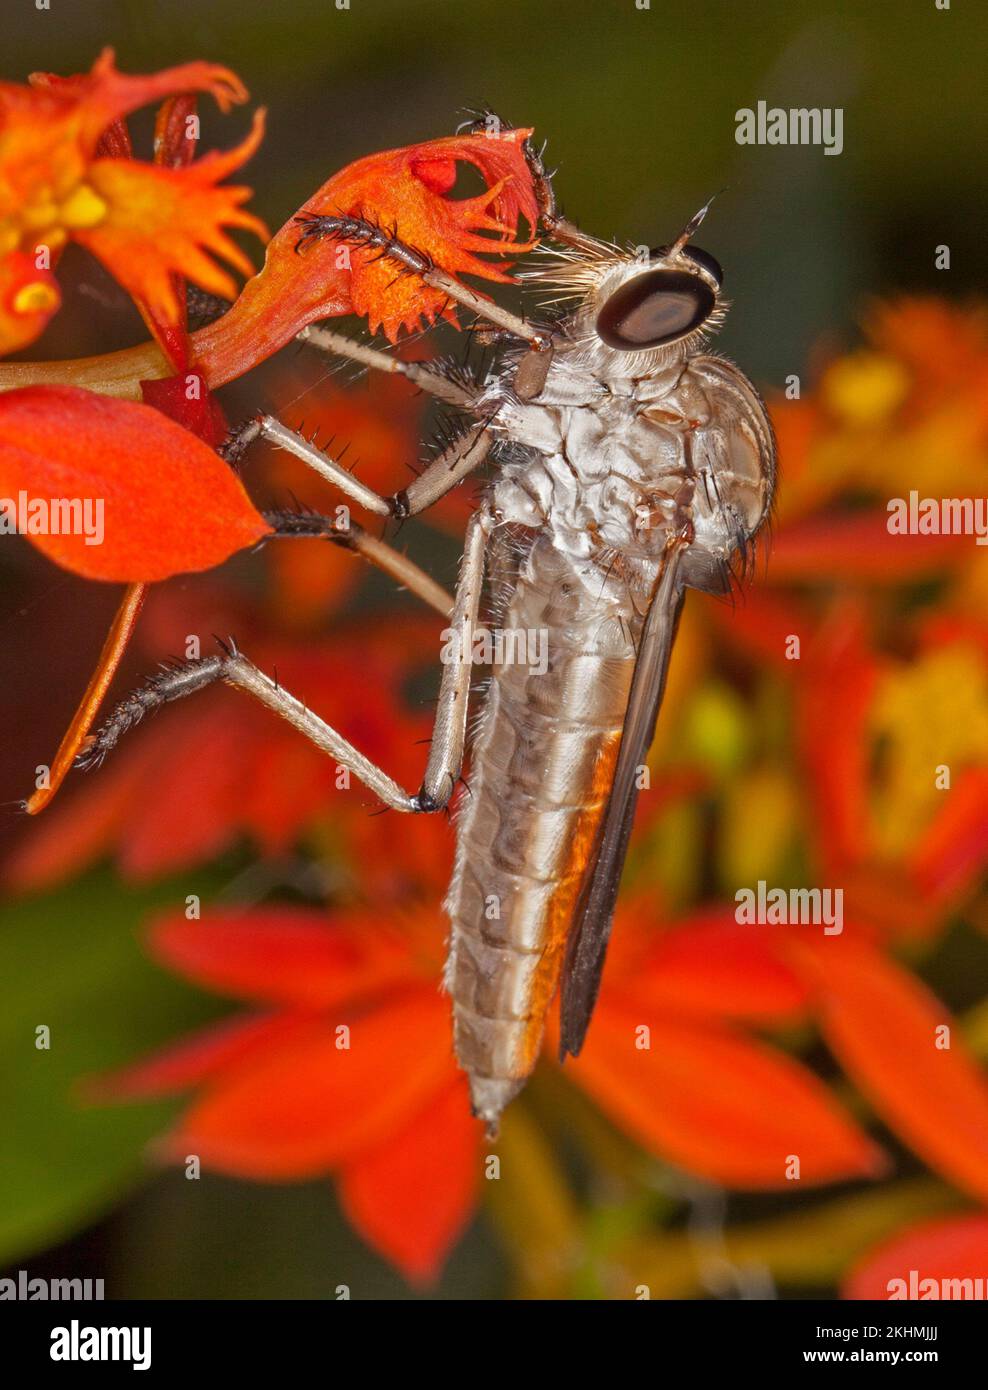 Robber / assassin fly, famiglia Ailidae, un insetto predatore benefico, su un fiore rosso vivo, con occhi enormi chiaramente visibile, in un giardino australiano, Foto Stock